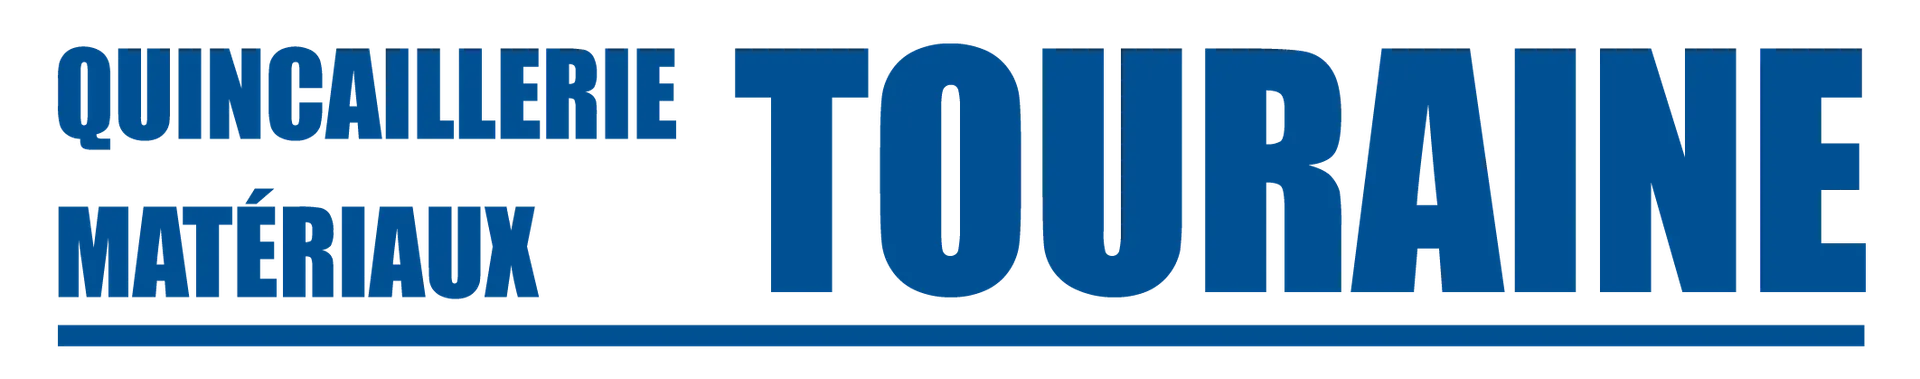 QUINCAILLERIE TOURAINE logo de circulaires